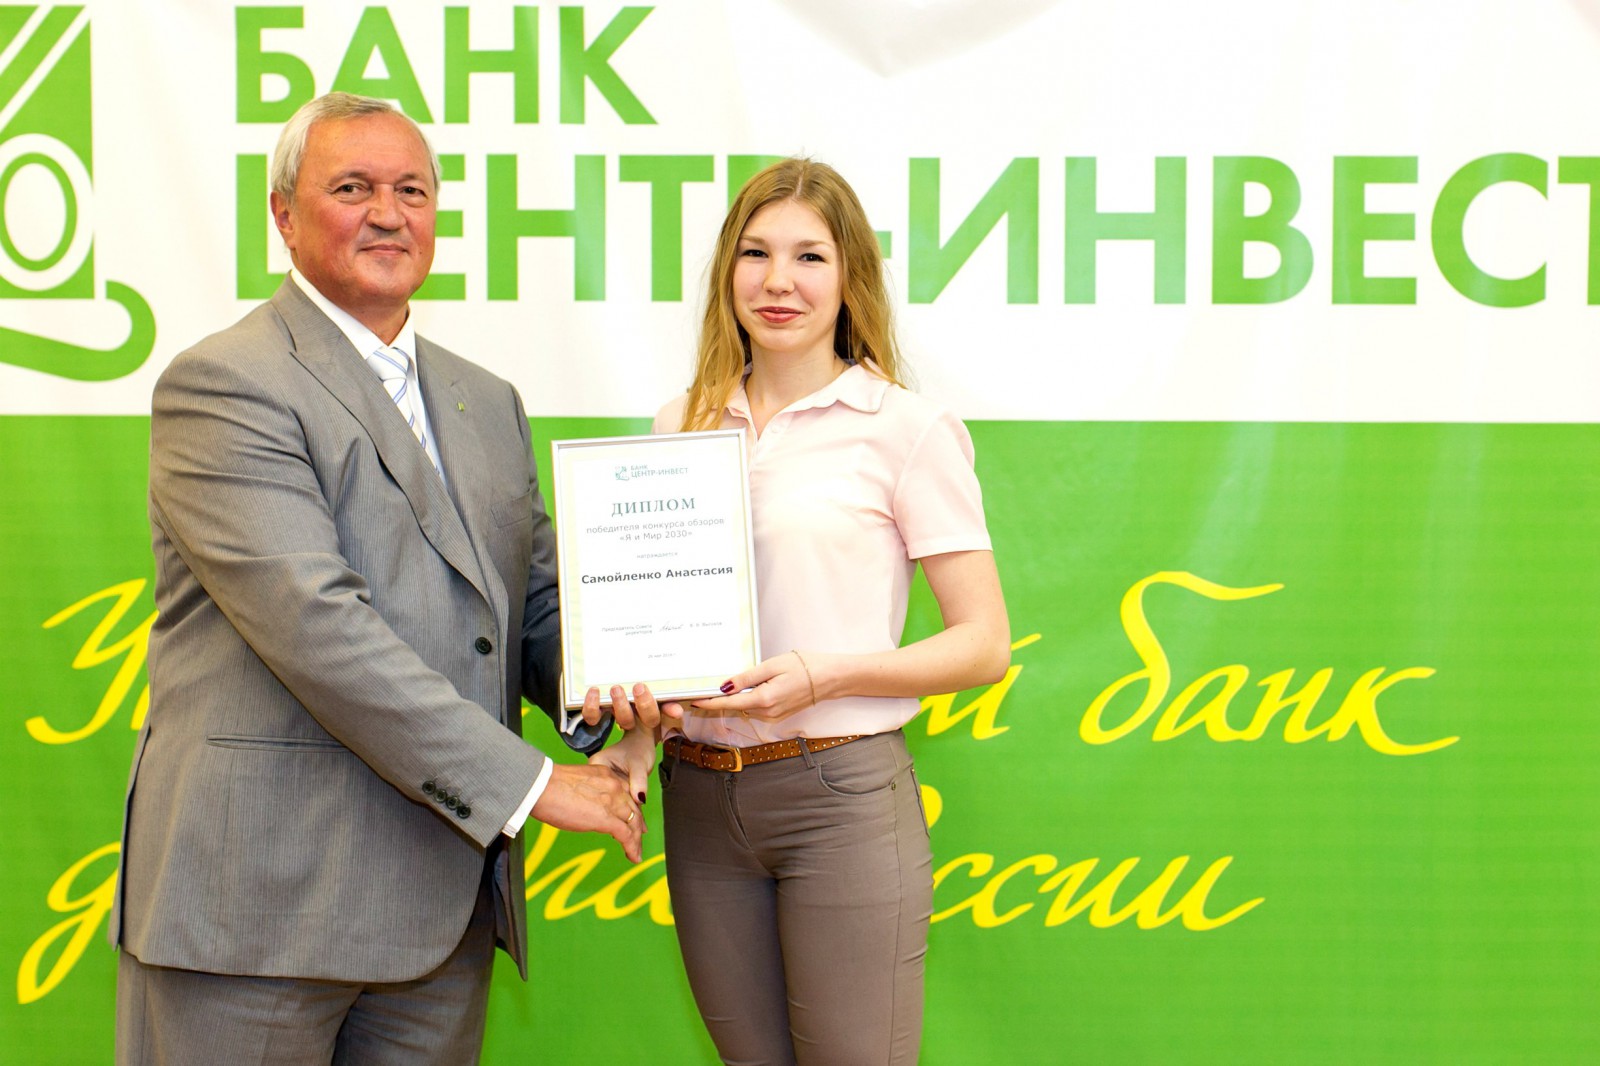 выпускница Анастасия Самойленко выиграла грант